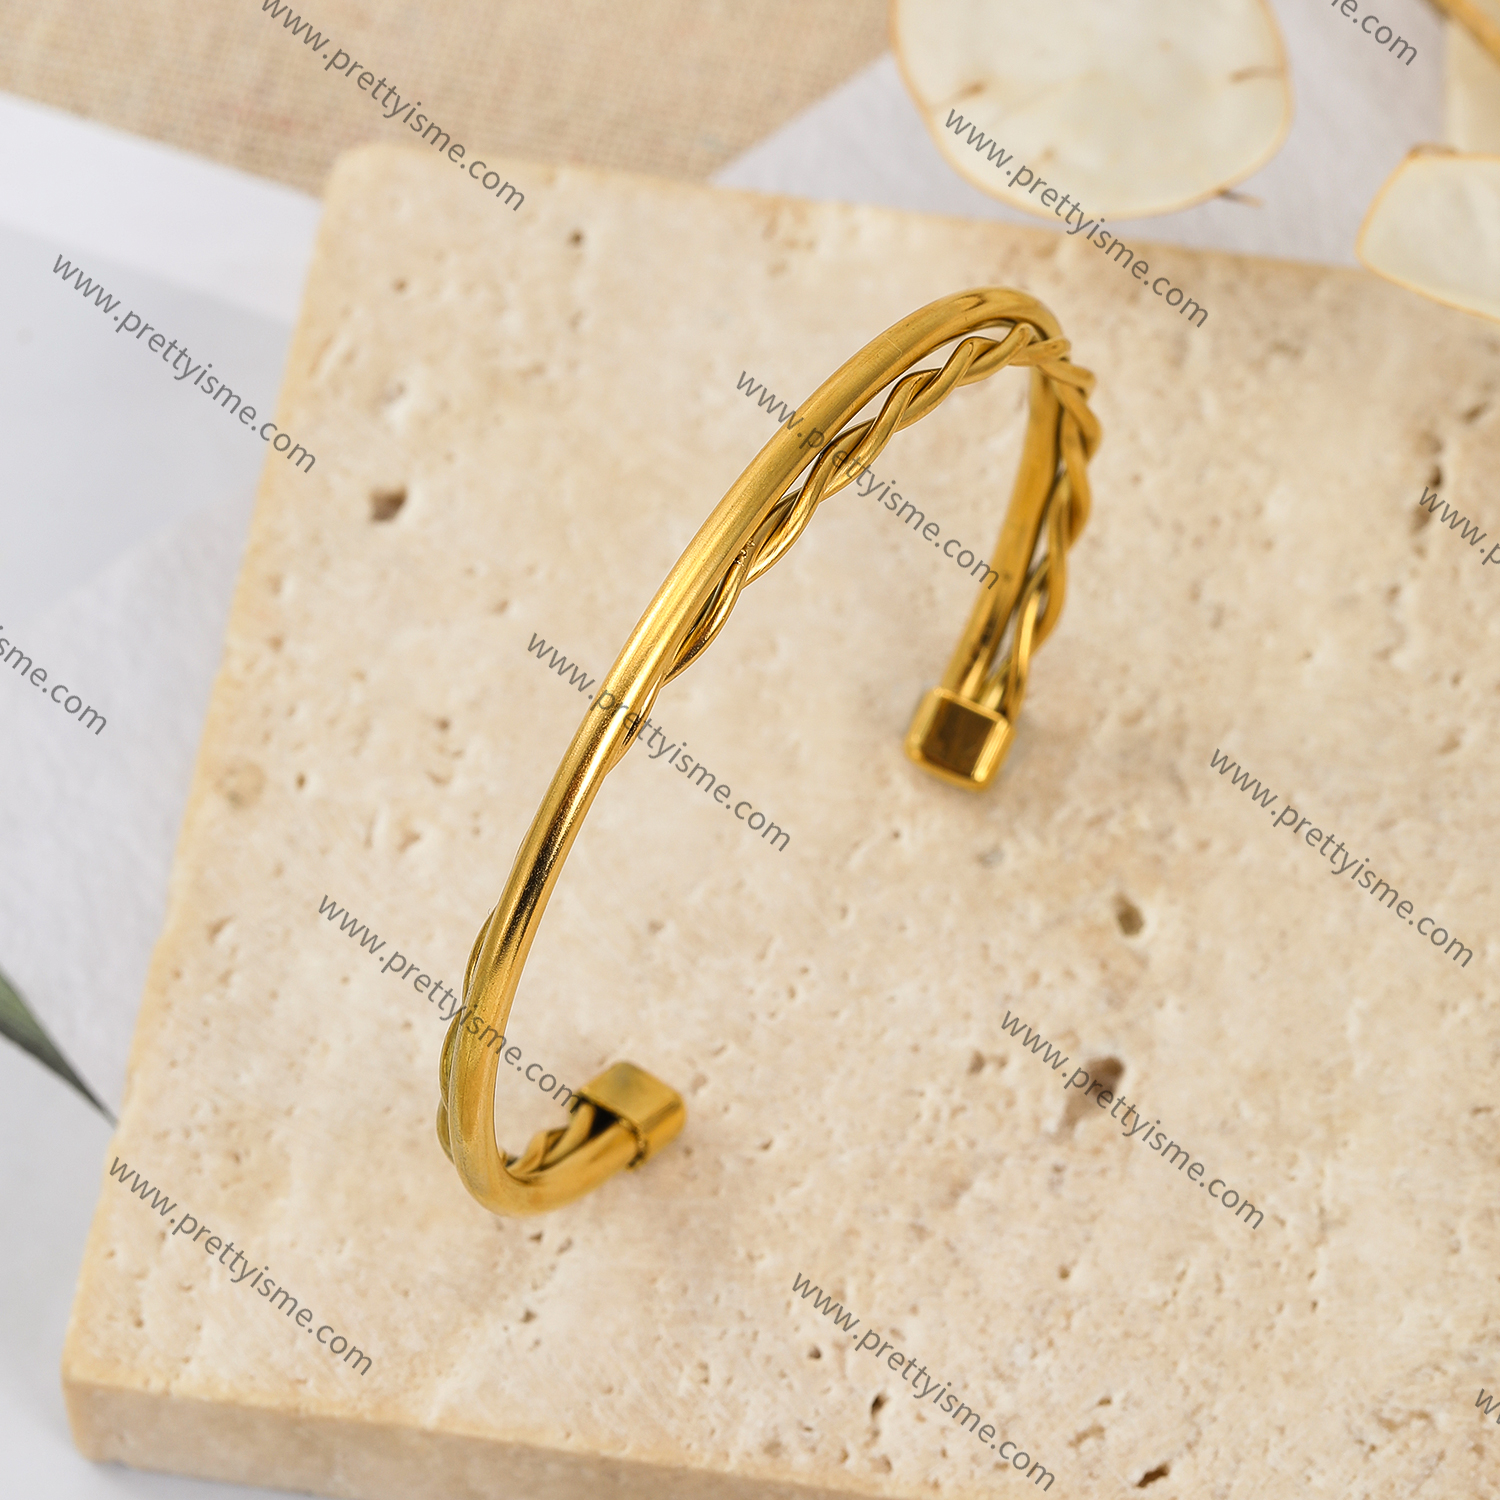 Interwoven Smooth Gold Stainless Steel Bracelet Waterproof Elegant Simple Bracelet (2).webp